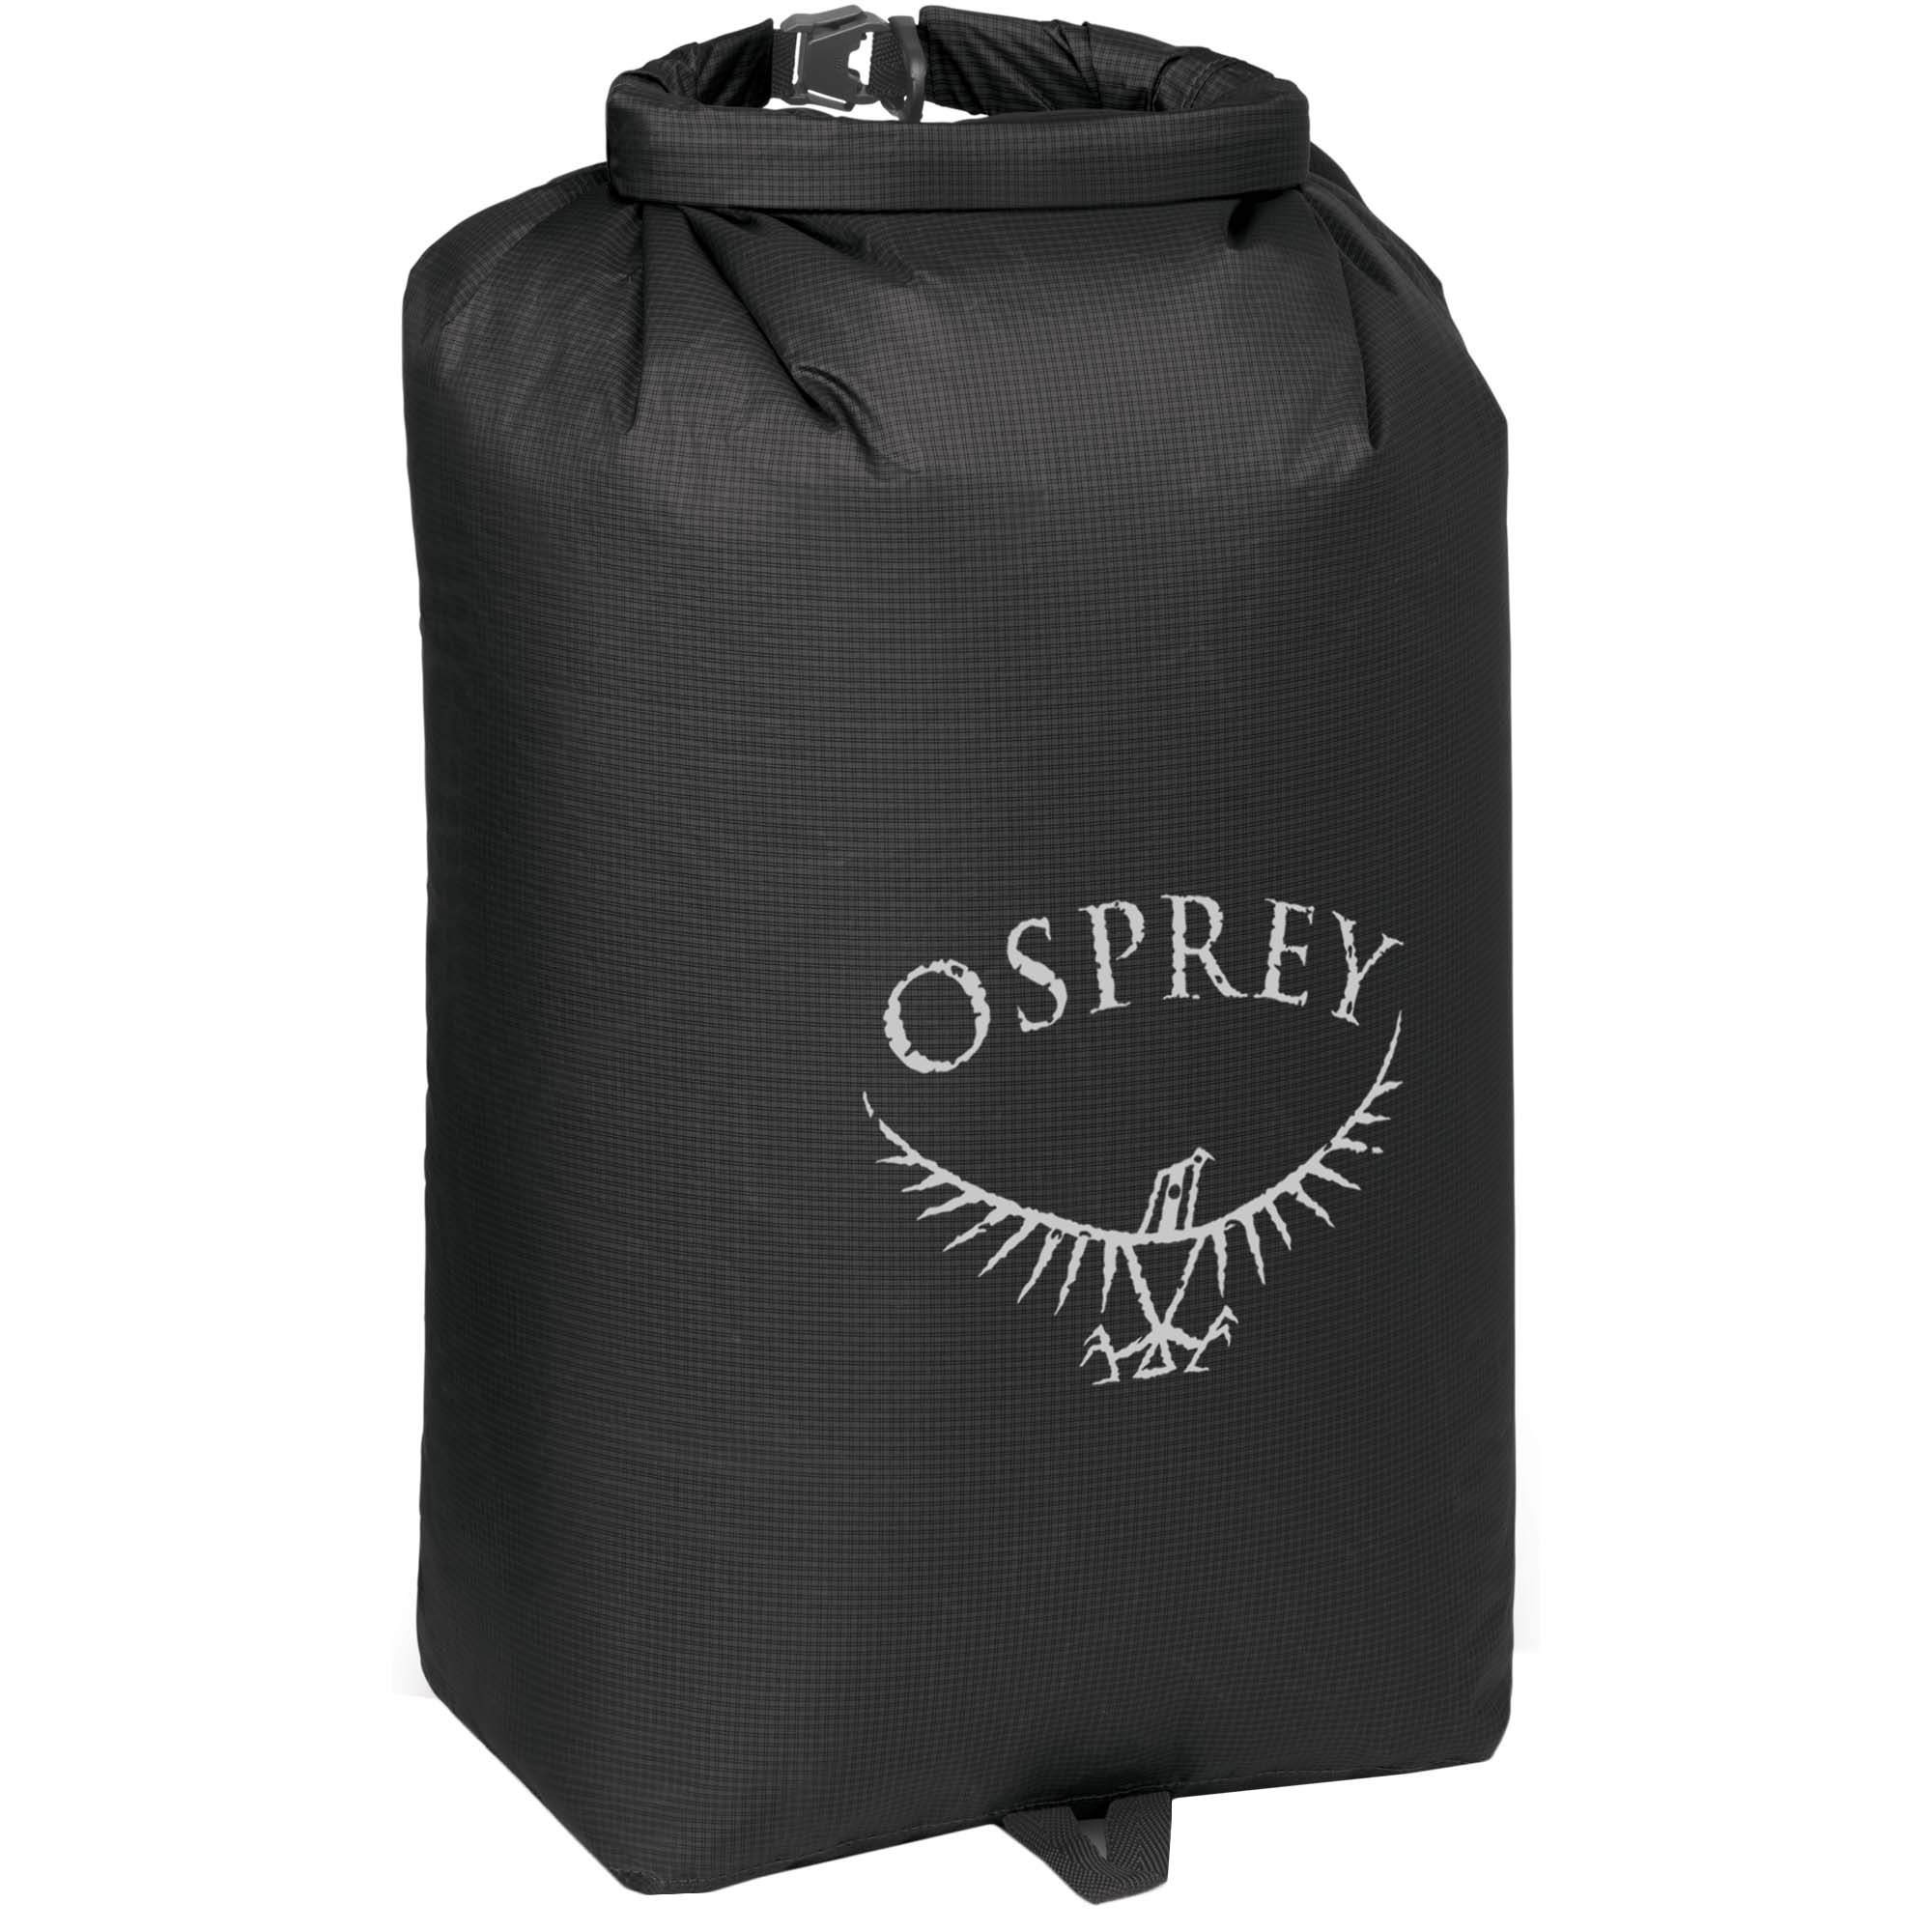 Osprey Ultralight Drysack 20 Waterproof Gear Bag